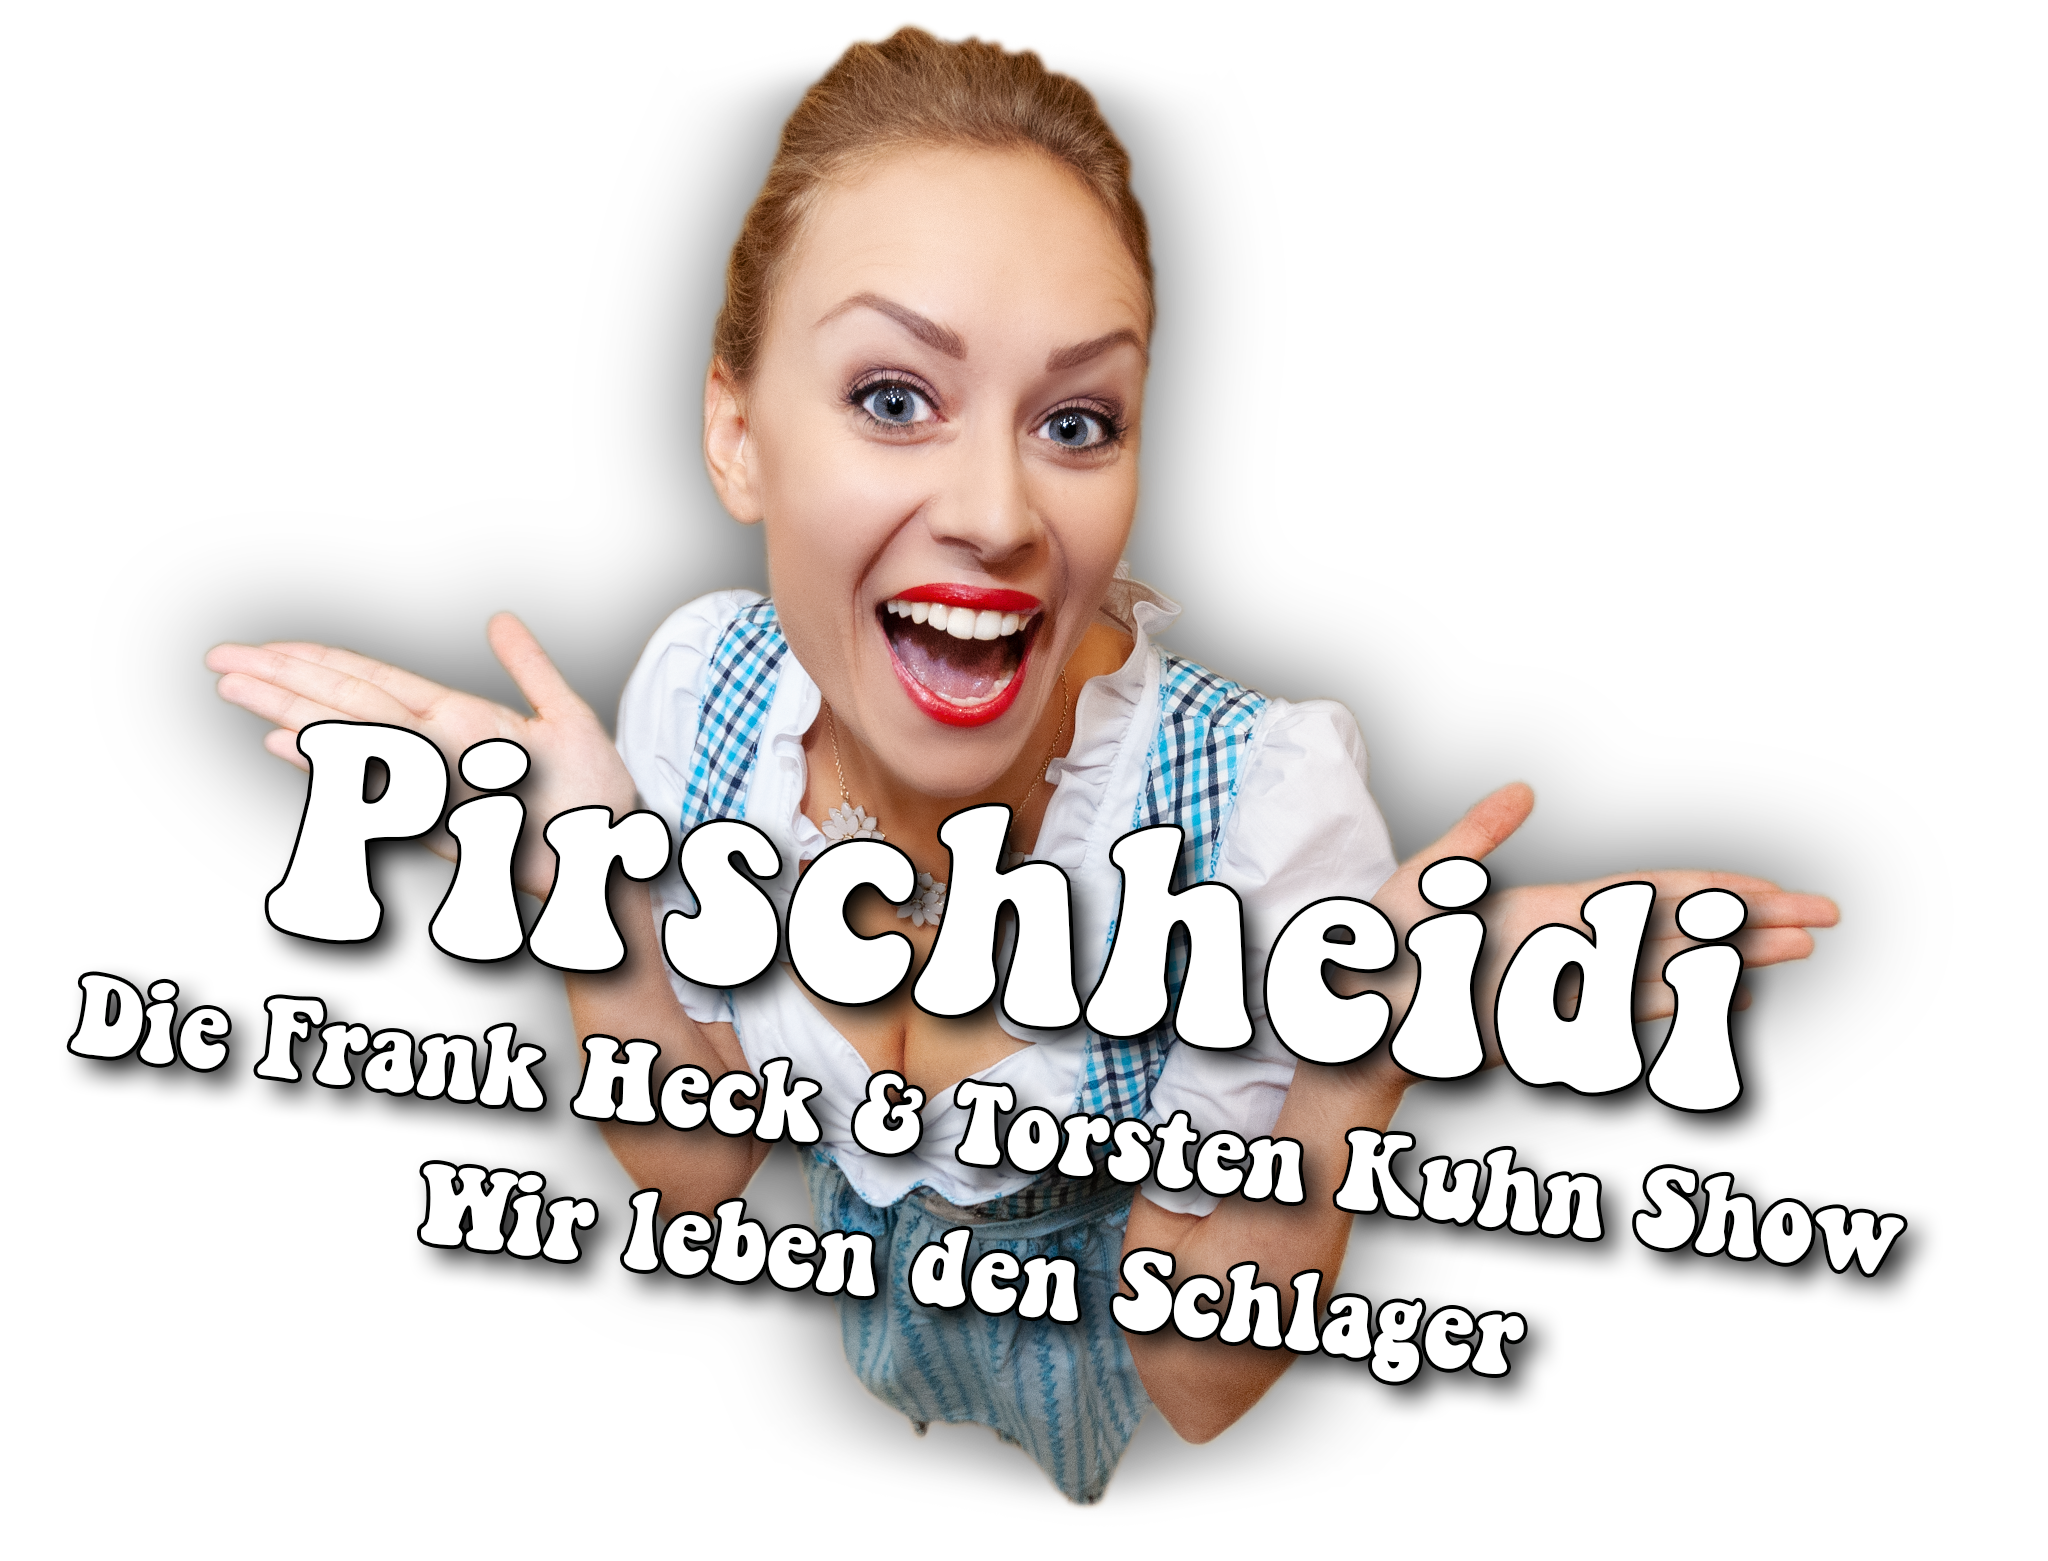 Pirschheidi - Die Frank Heck & Torsten Kuhn Show - Wir leben den Schlager